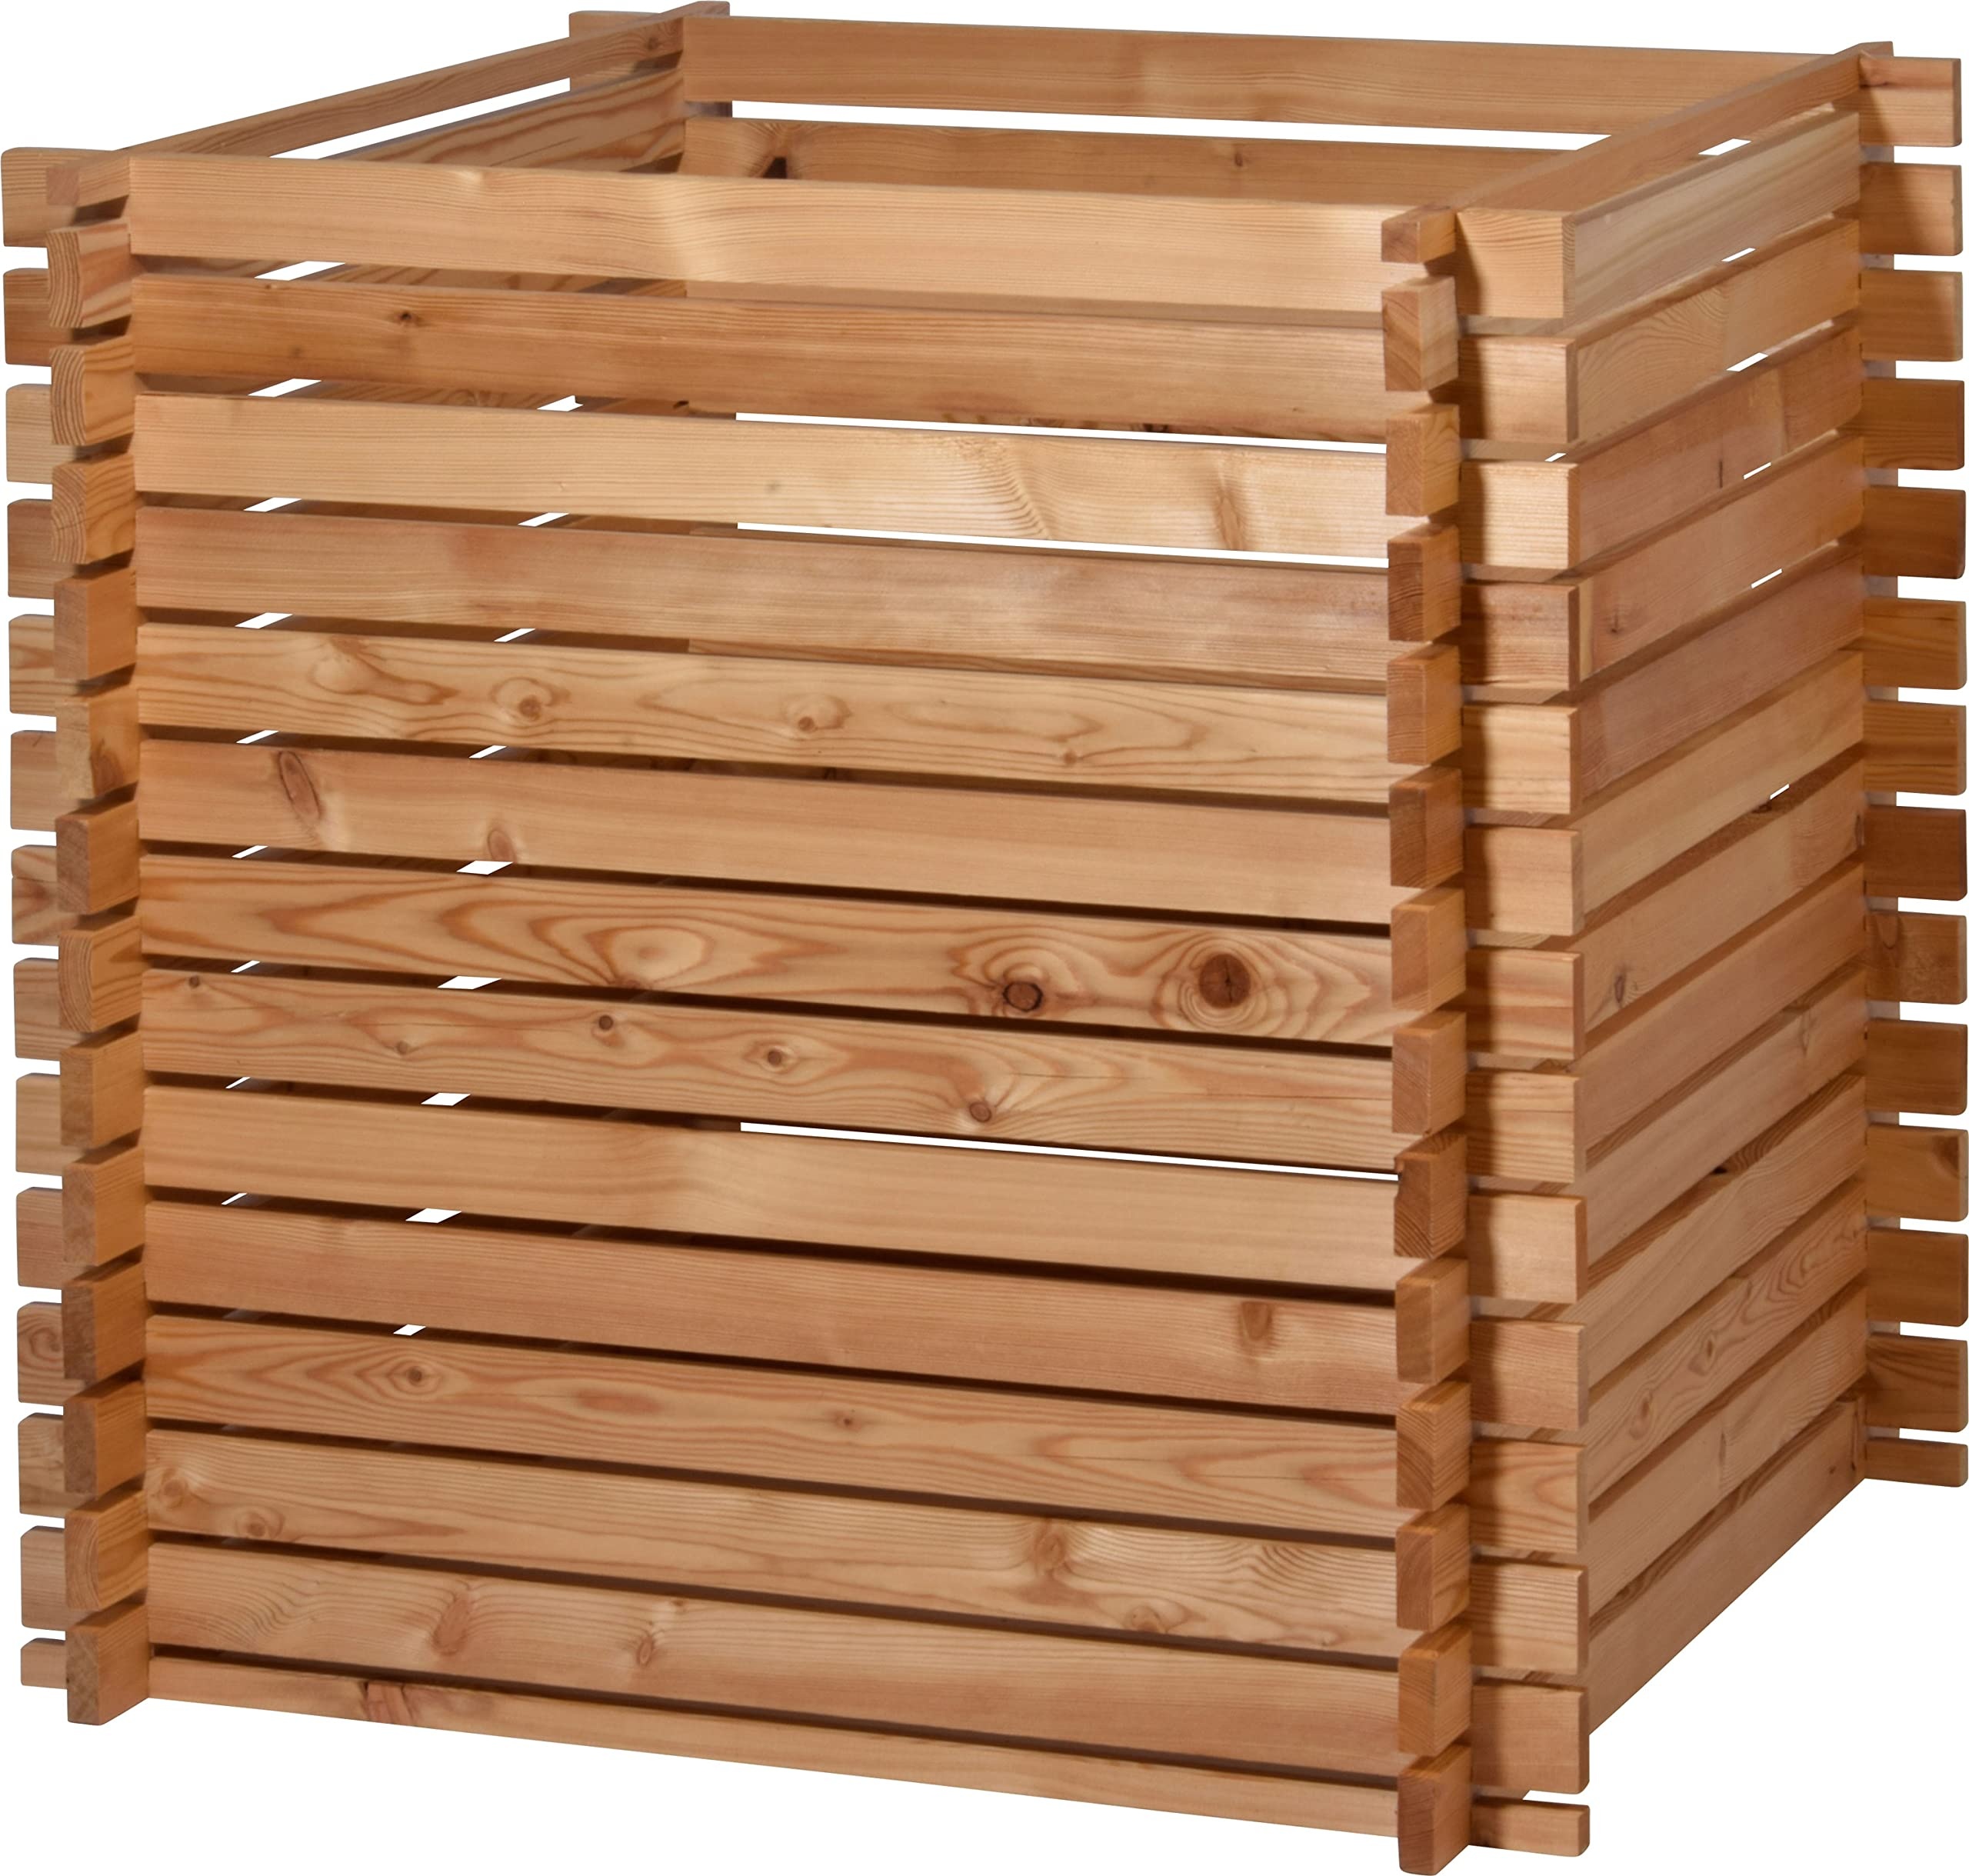 Bild 58630FSCe Quadratischer Holz-Komposter Lärchi - Kompostbehälter mit Stecksystem - witterungsbeständiger Kompostierer - 79 x 79 x 79 cm l Lärche - Natur